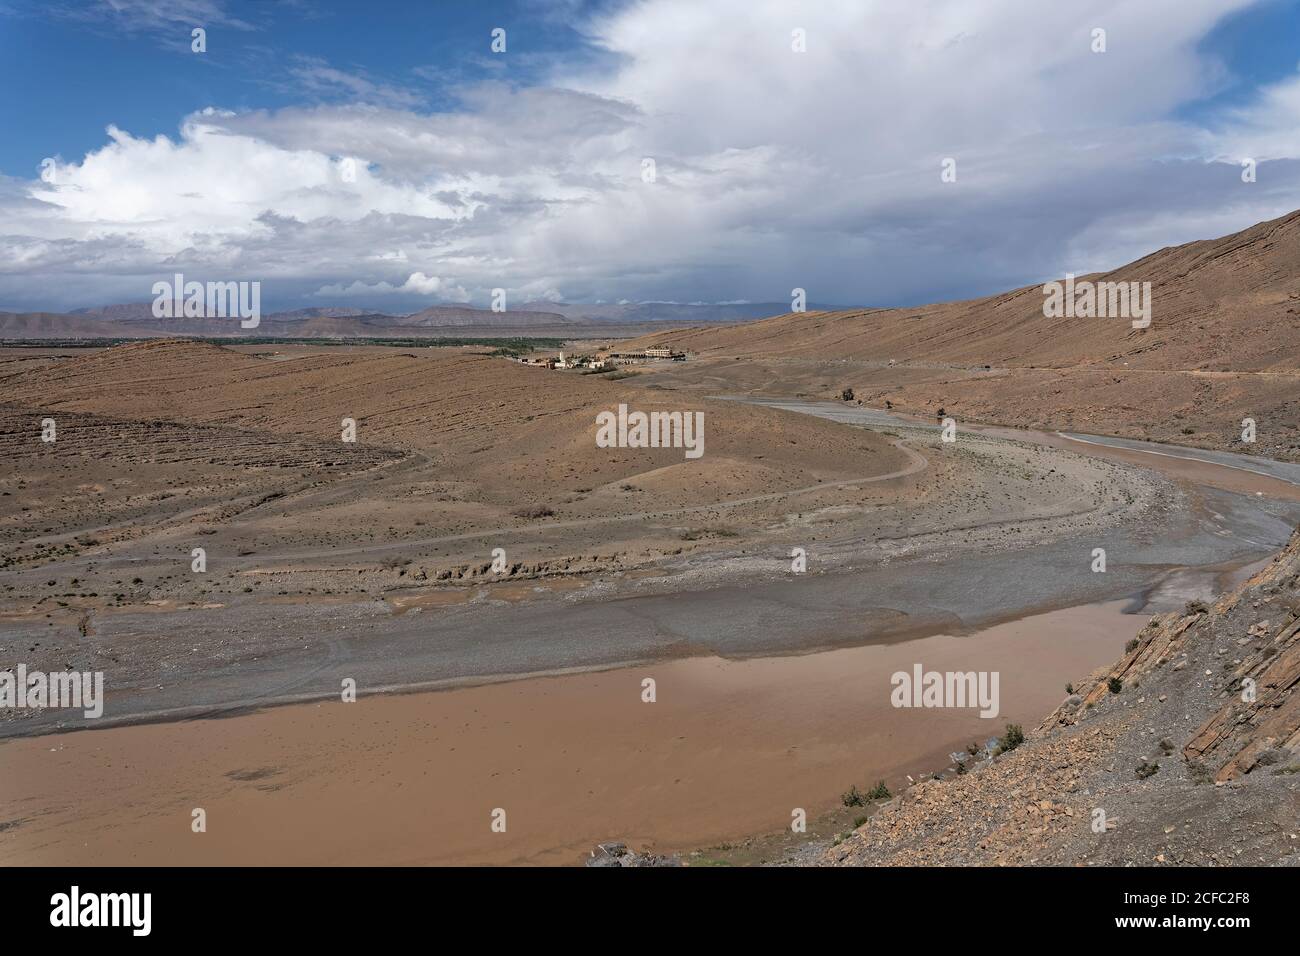 marocco, fes, fiume Ziz, deserto del Sahara vicino a Rissani, Africa del Nord, paesaggio arido Foto Stock